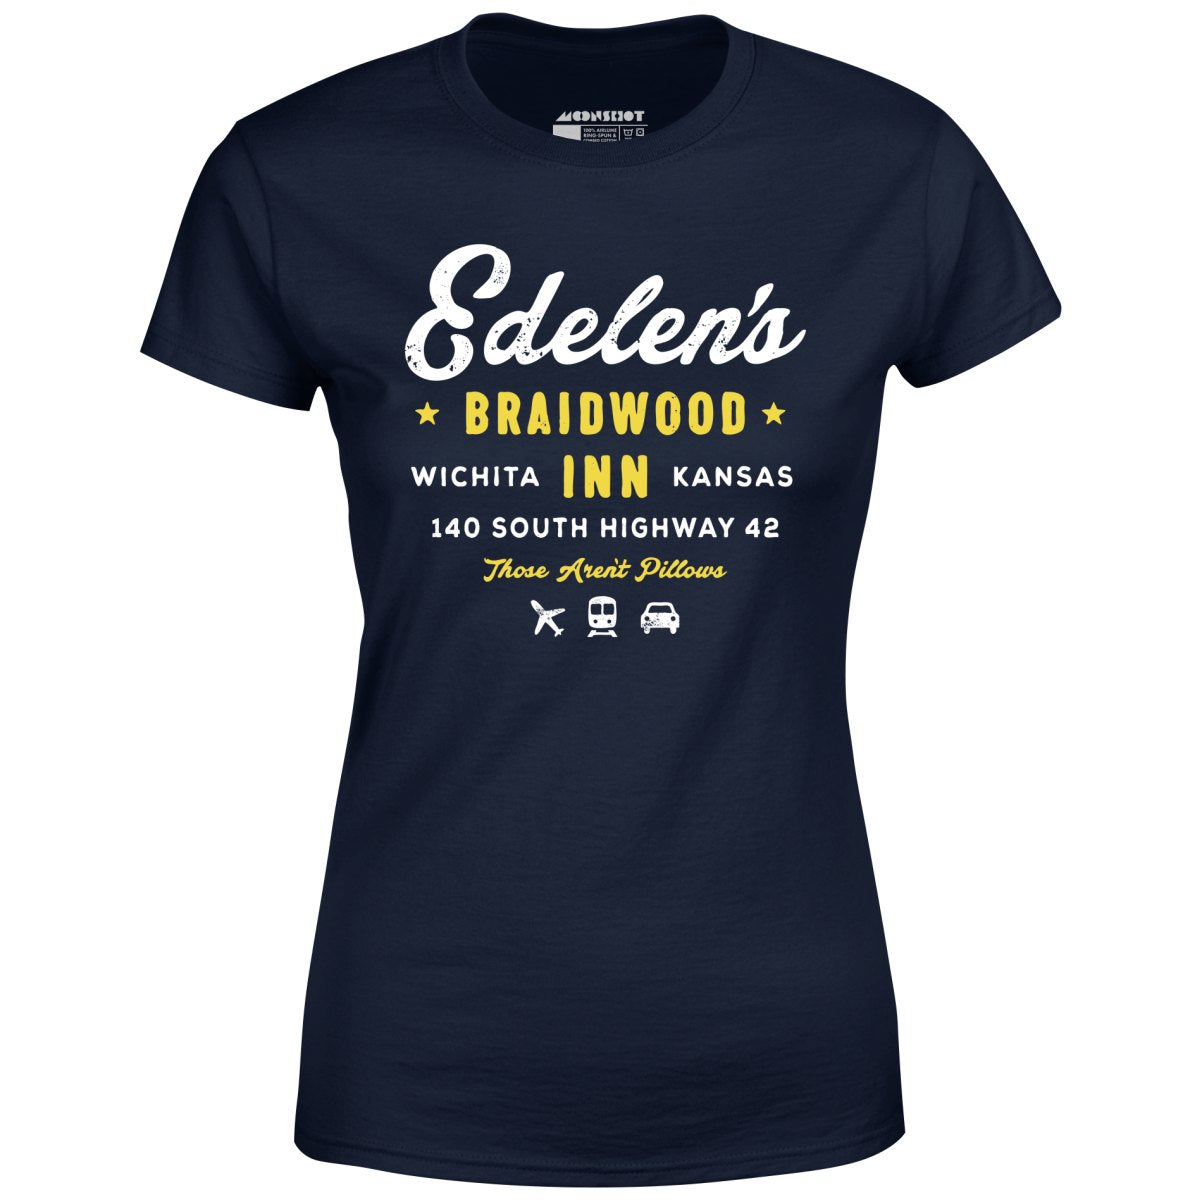 Edelen's Braidwood Inn - Women's T-Shirt